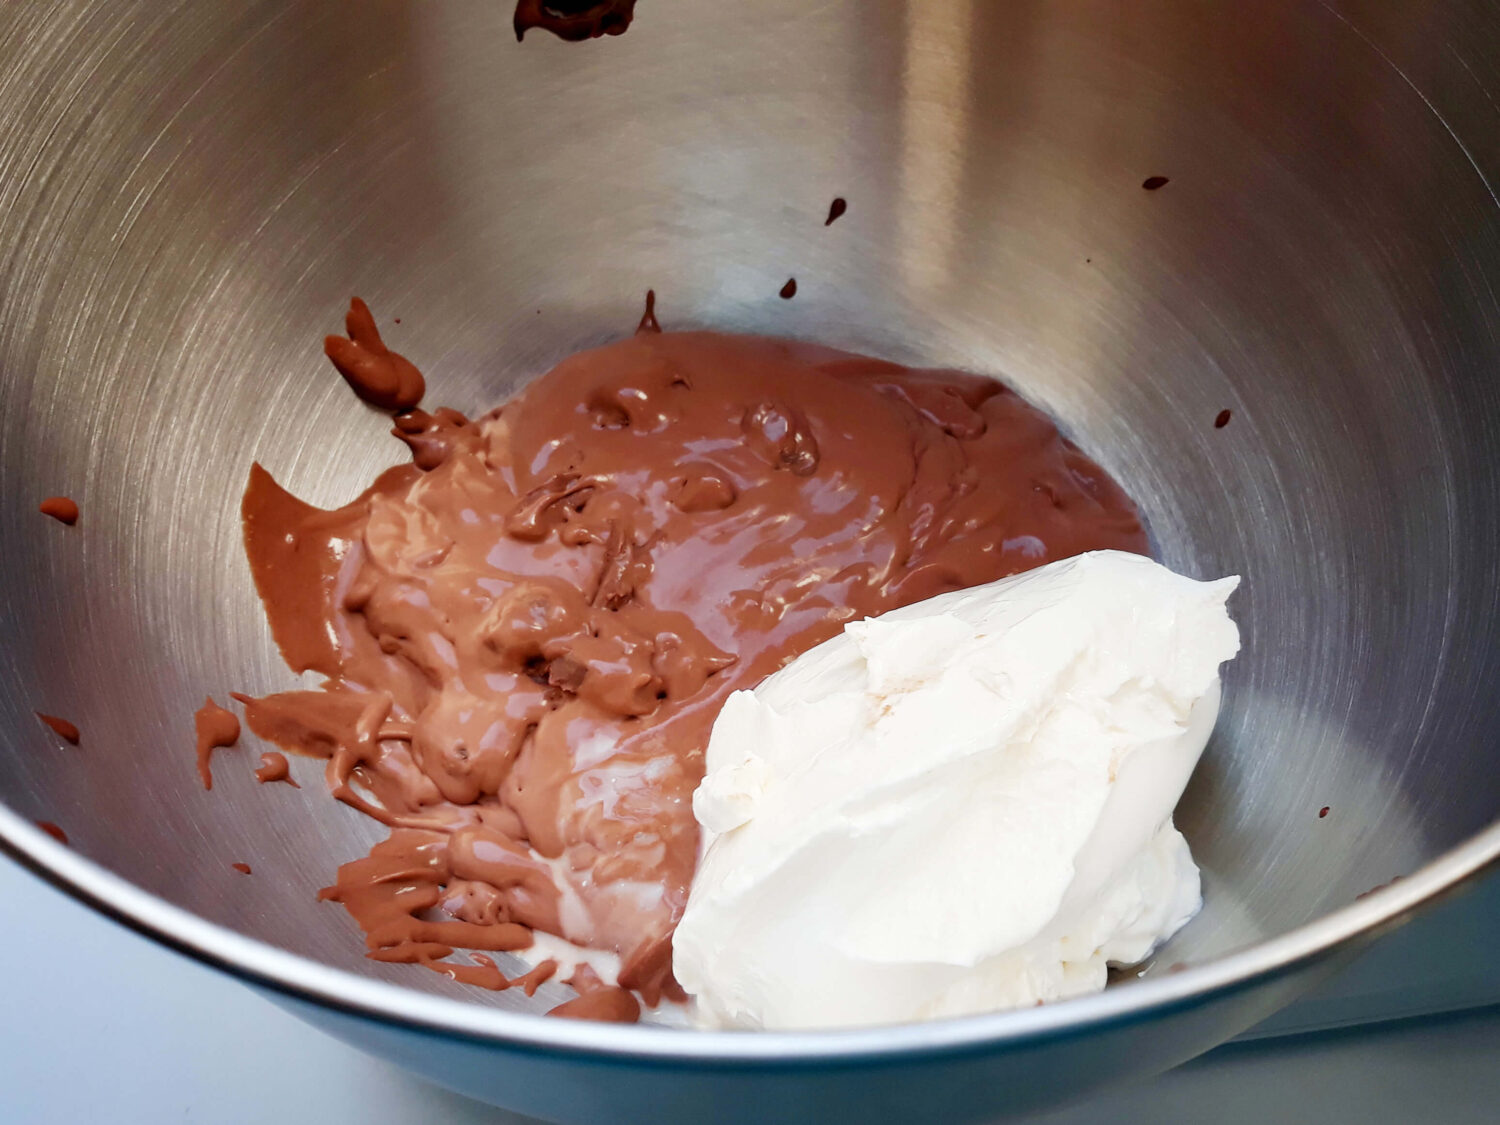 przygotowanie kremu czekoladowego, łączenie ganache czekoladowego z mascapone, misa miksera